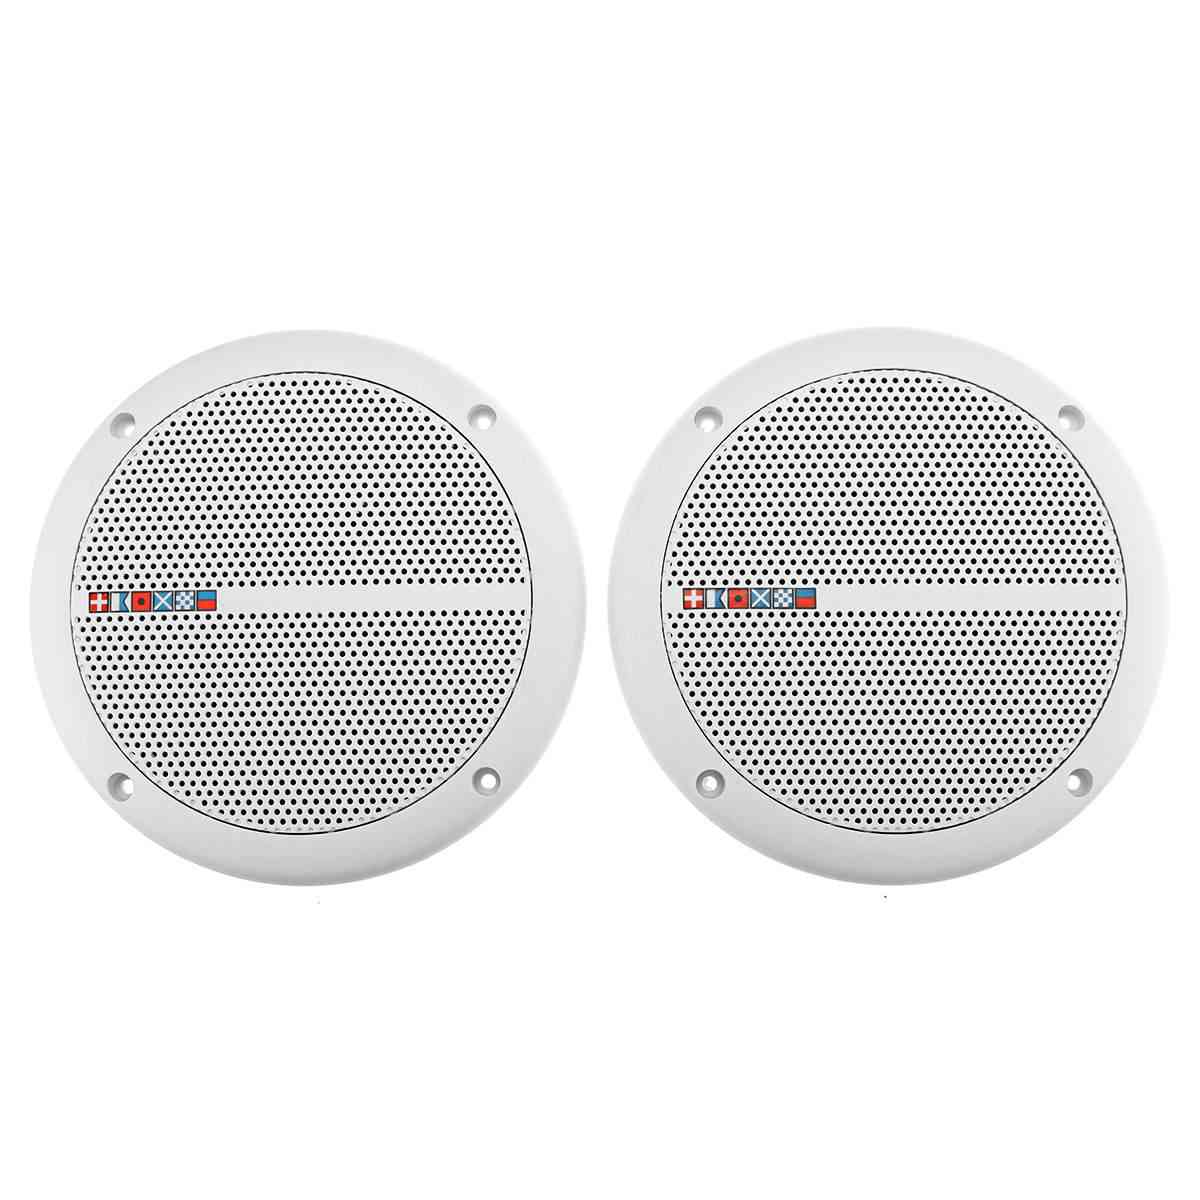 Waterproof Ceiling Speaker Syatems -2-way Flush Mount  Loundspeaker Amplifier